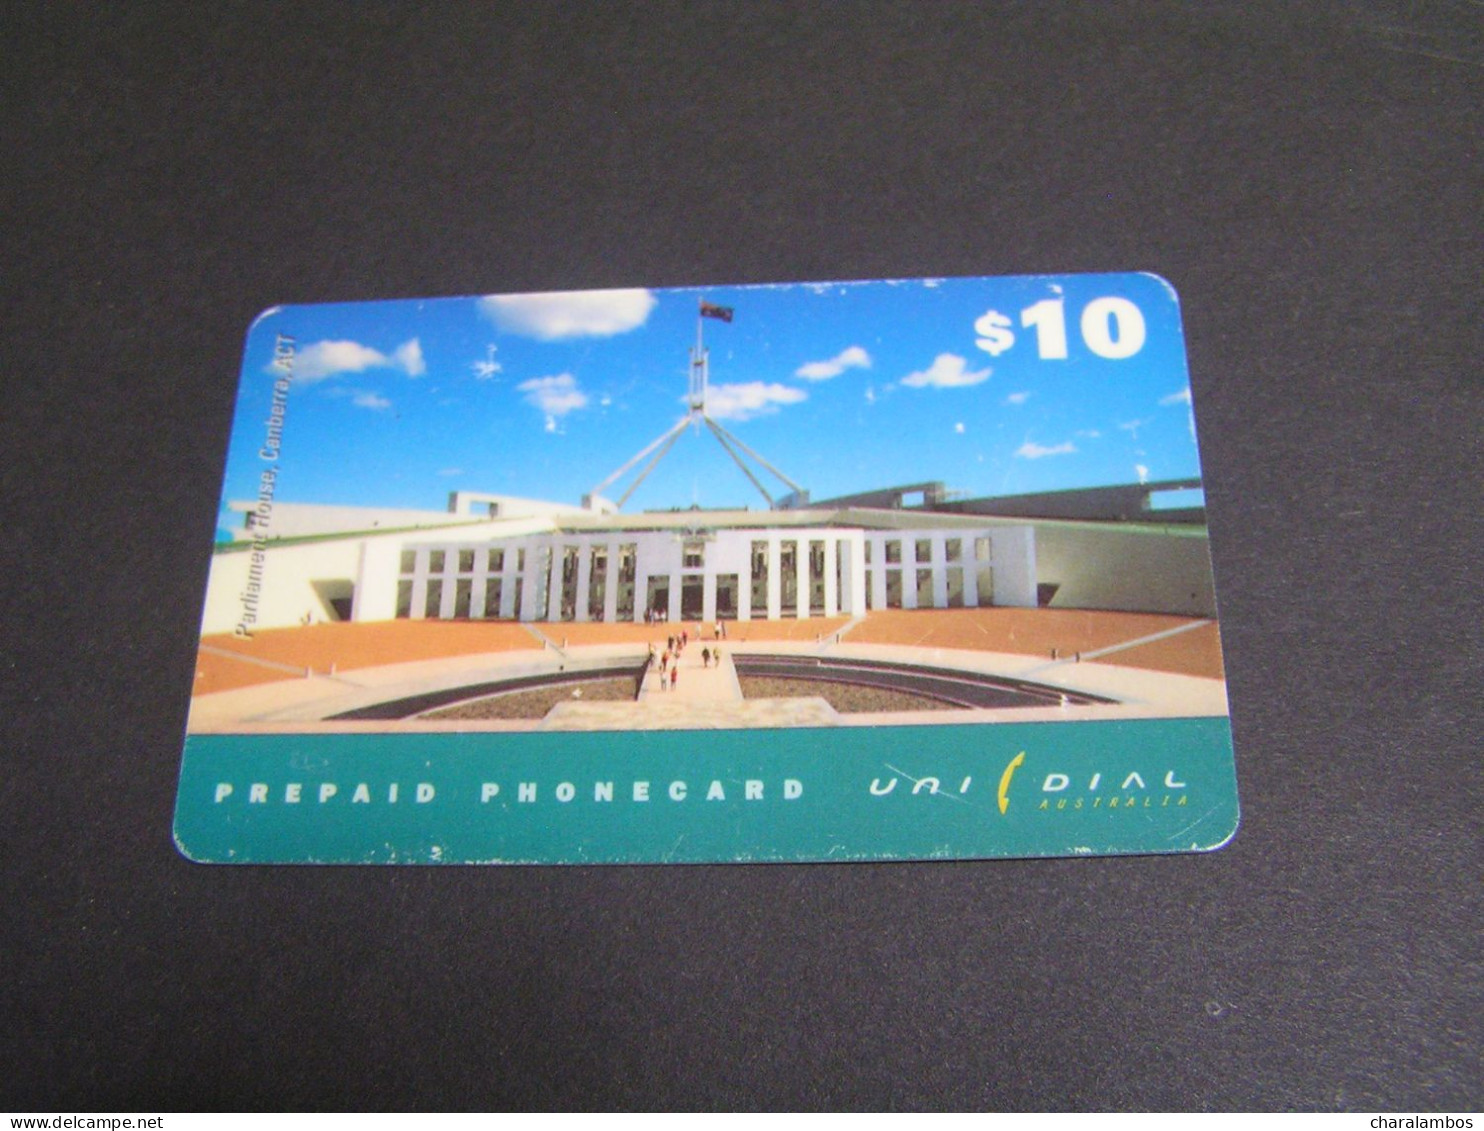 AUSTRALIA Prepaid Card. - Australie